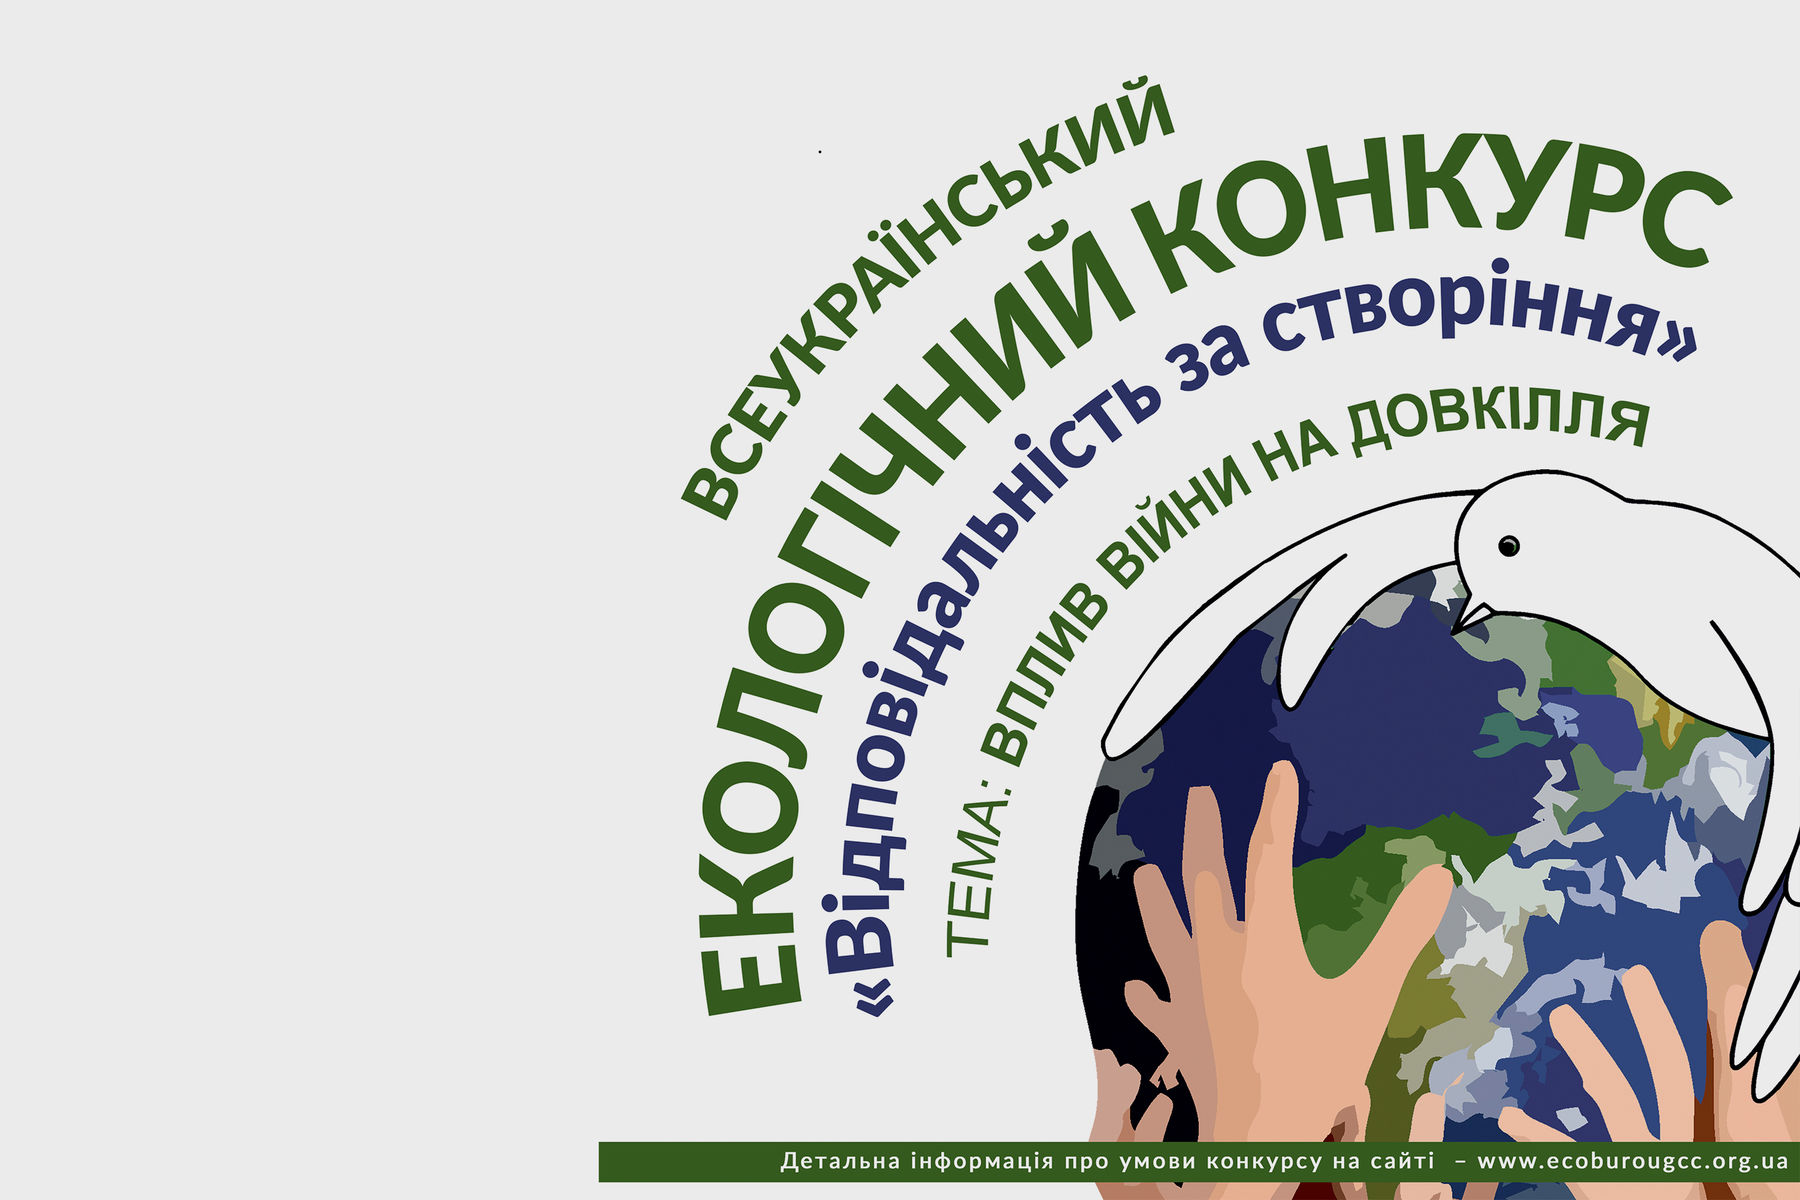 Увага! Всеукраїнський екологічний конкурс «Відповідальність за створіння»